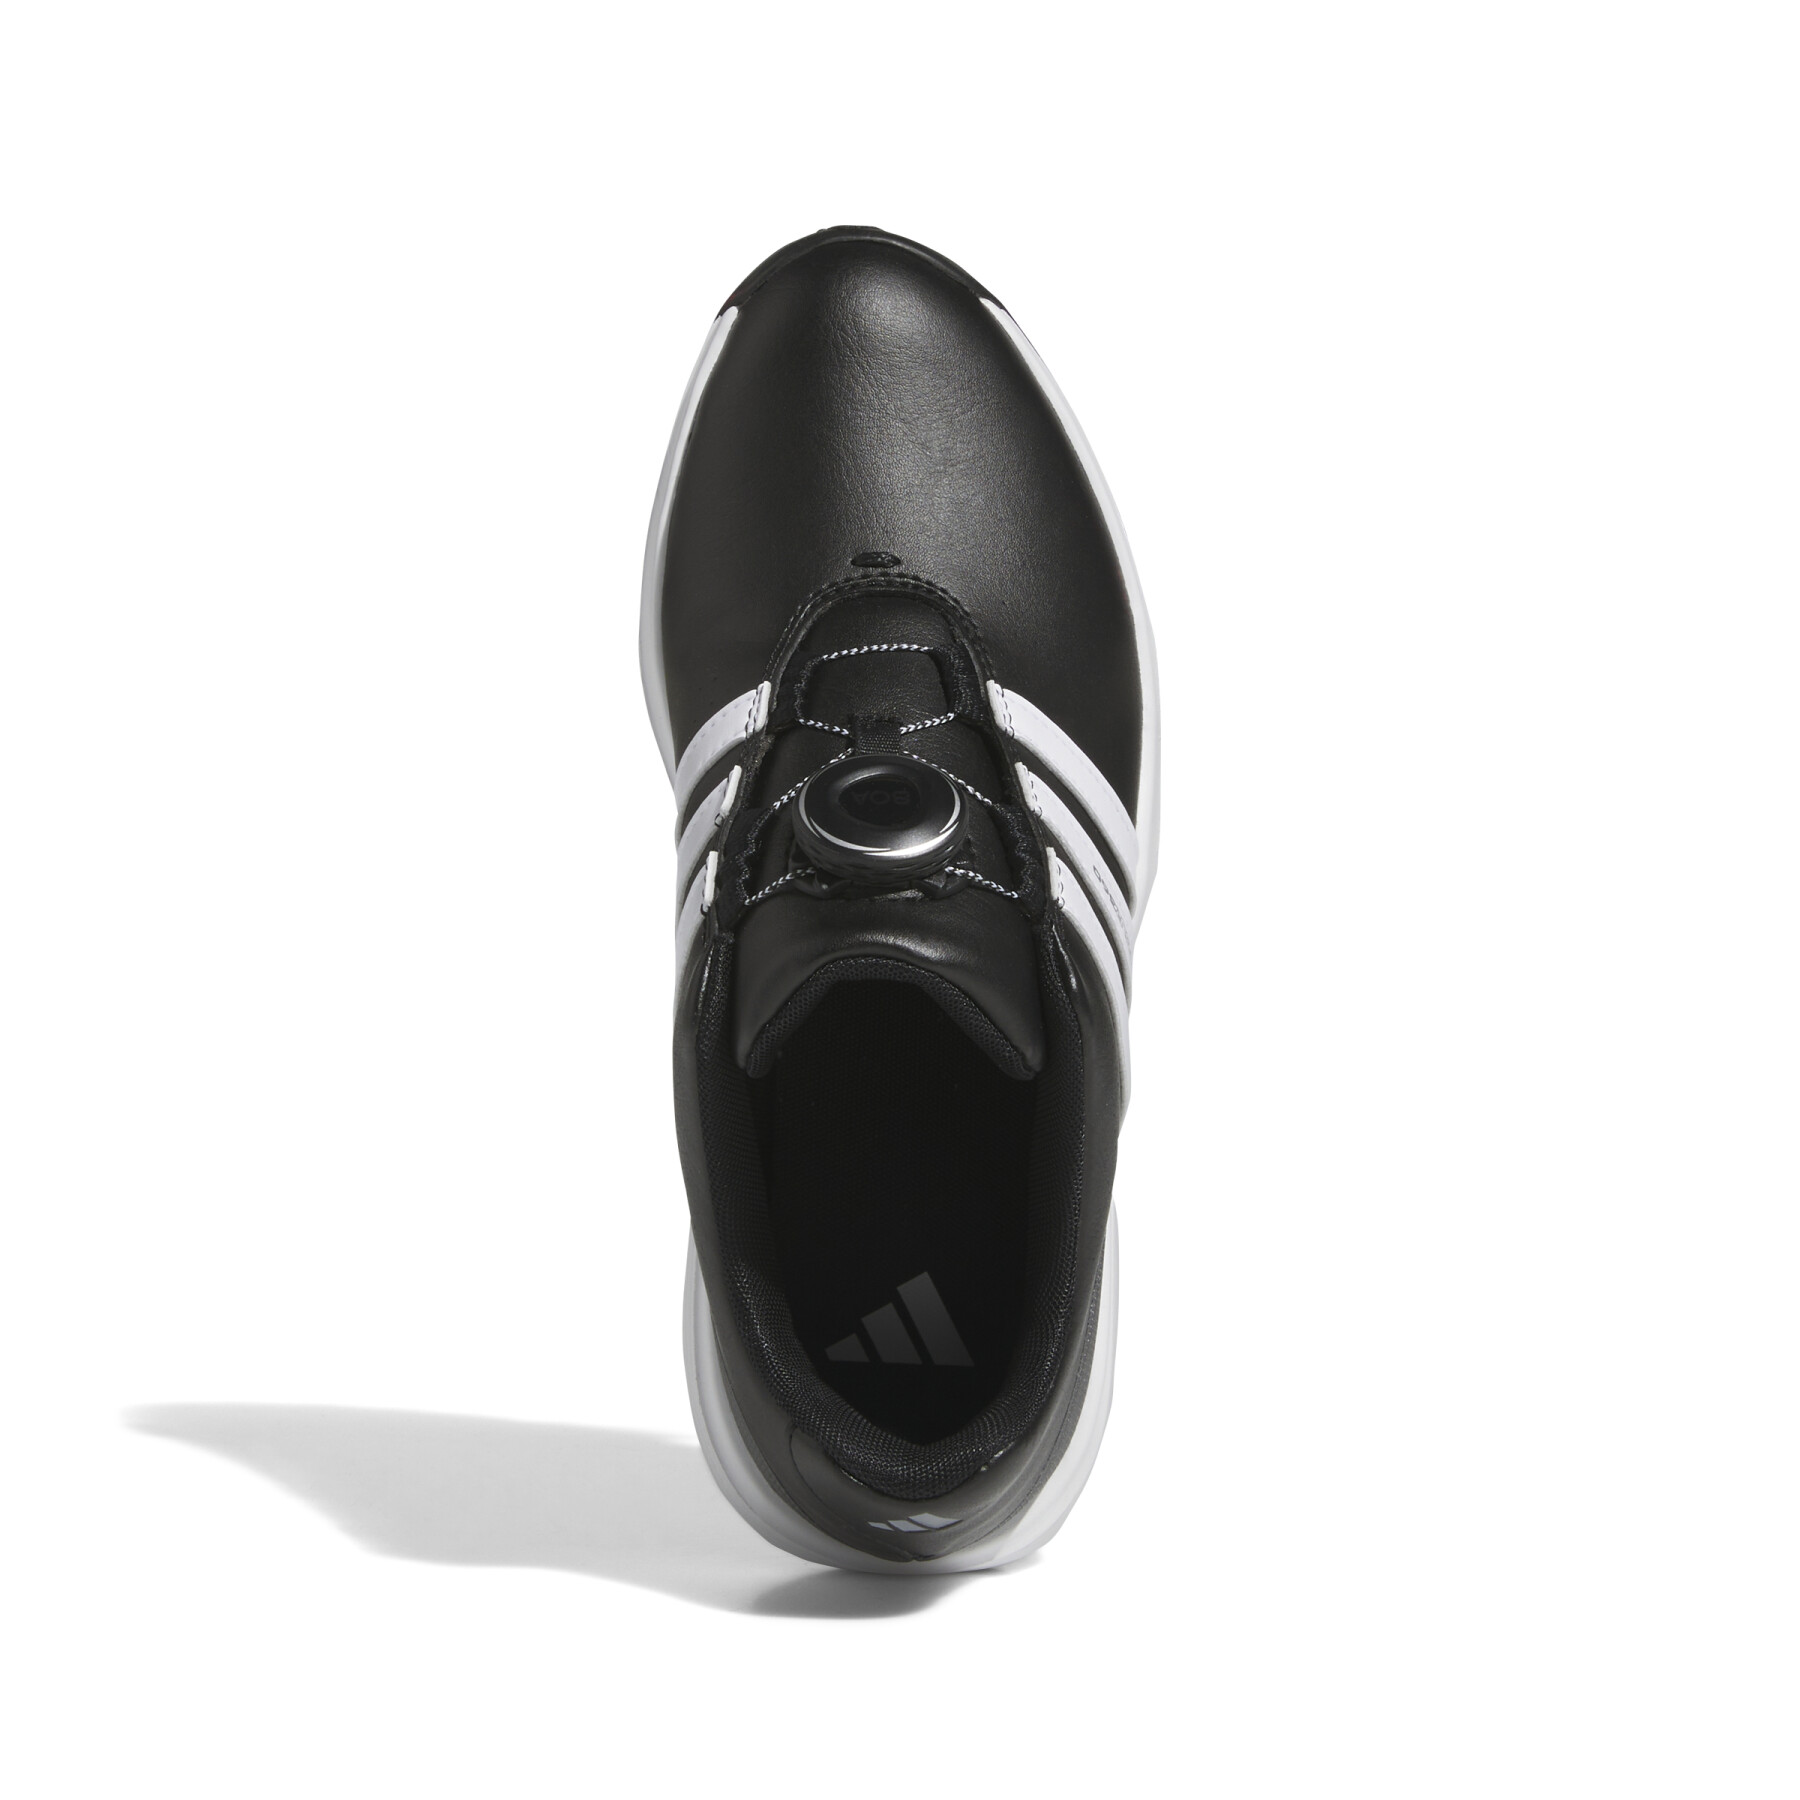 Sapatos de golfe com pontas para crianças adidas Tour360 24 BOA